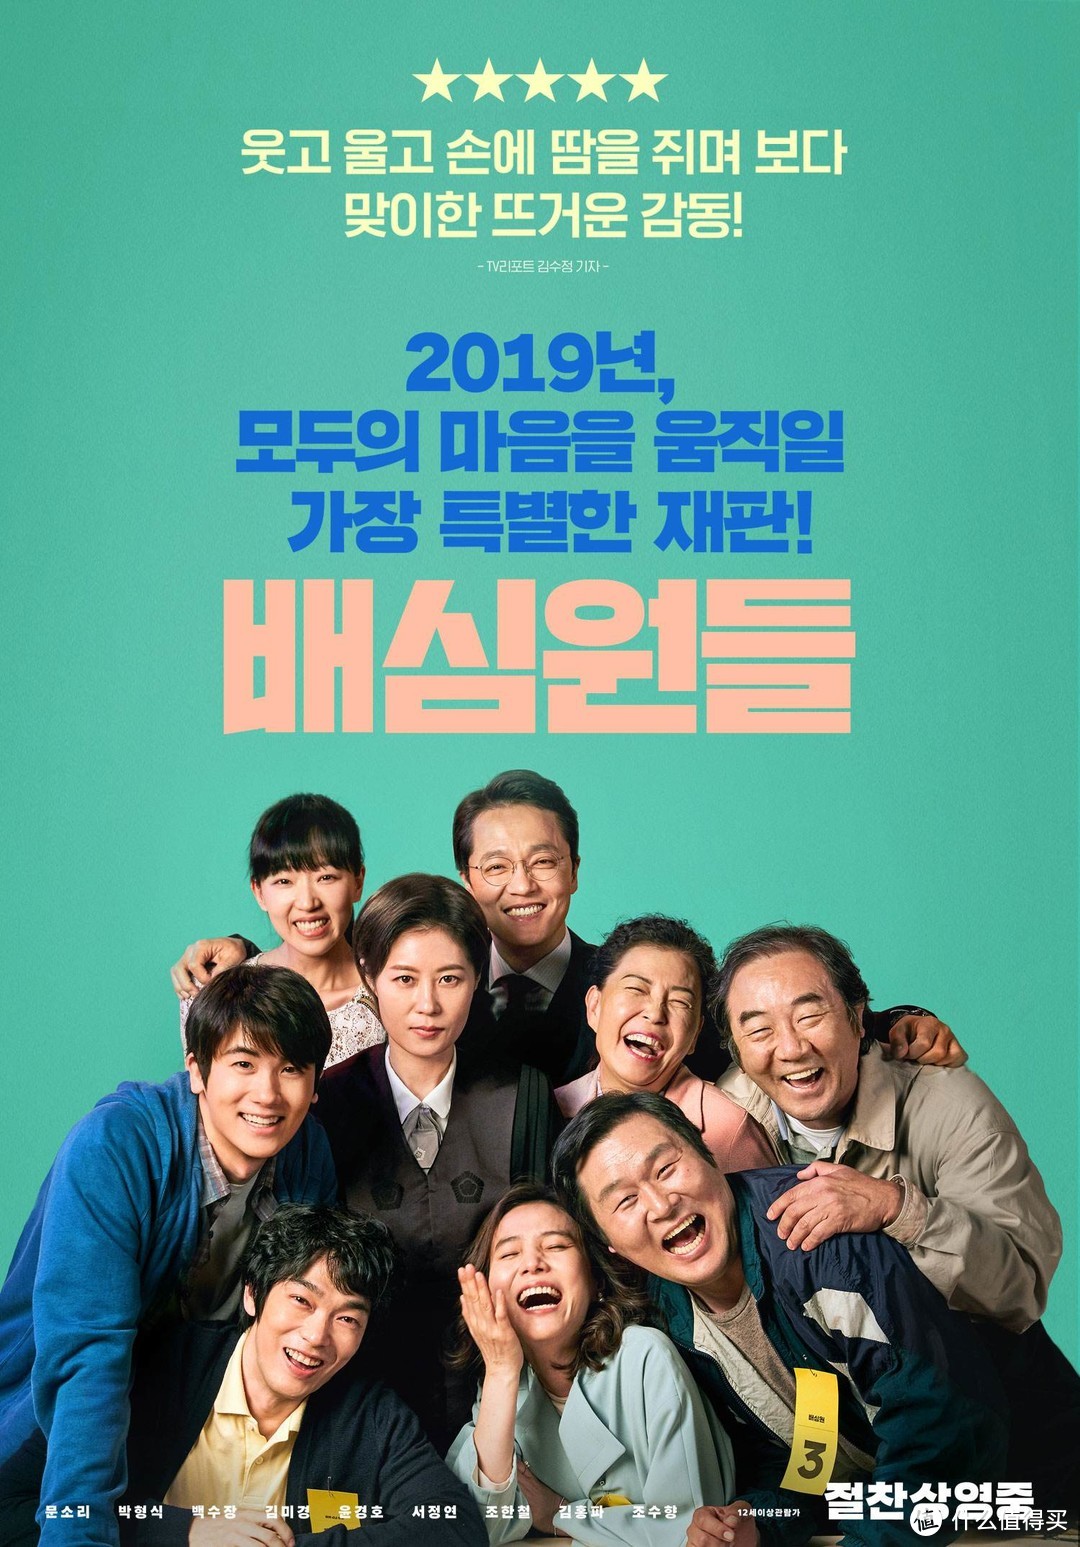 10部2019年上映、值得一看的韩国电影推荐